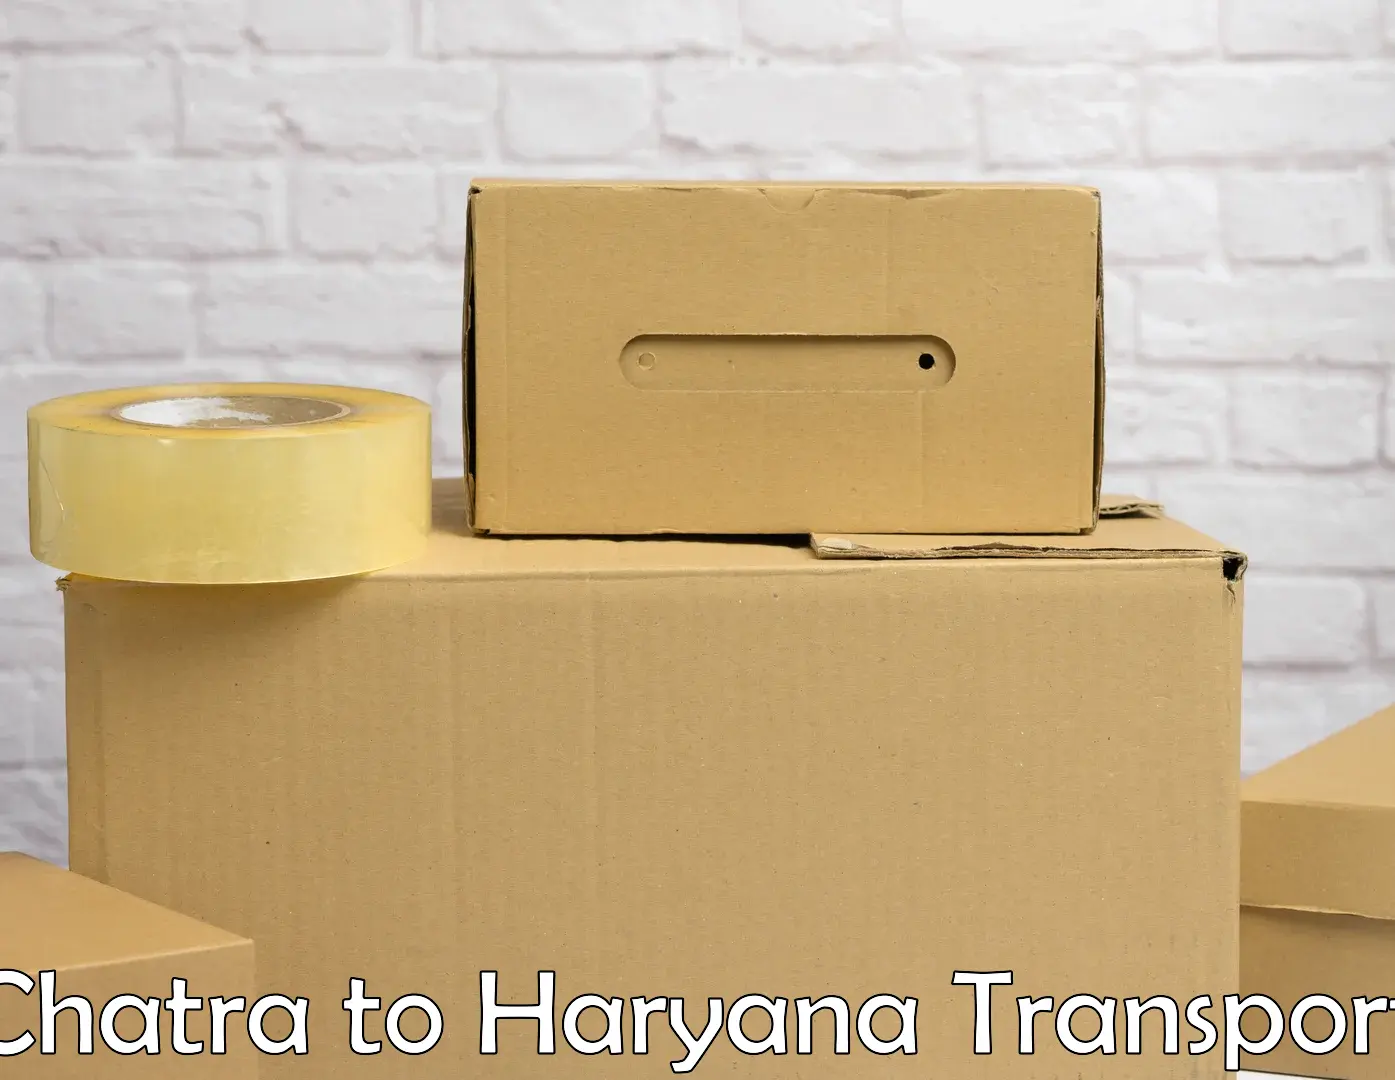 Transportation services Chatra to Haryana